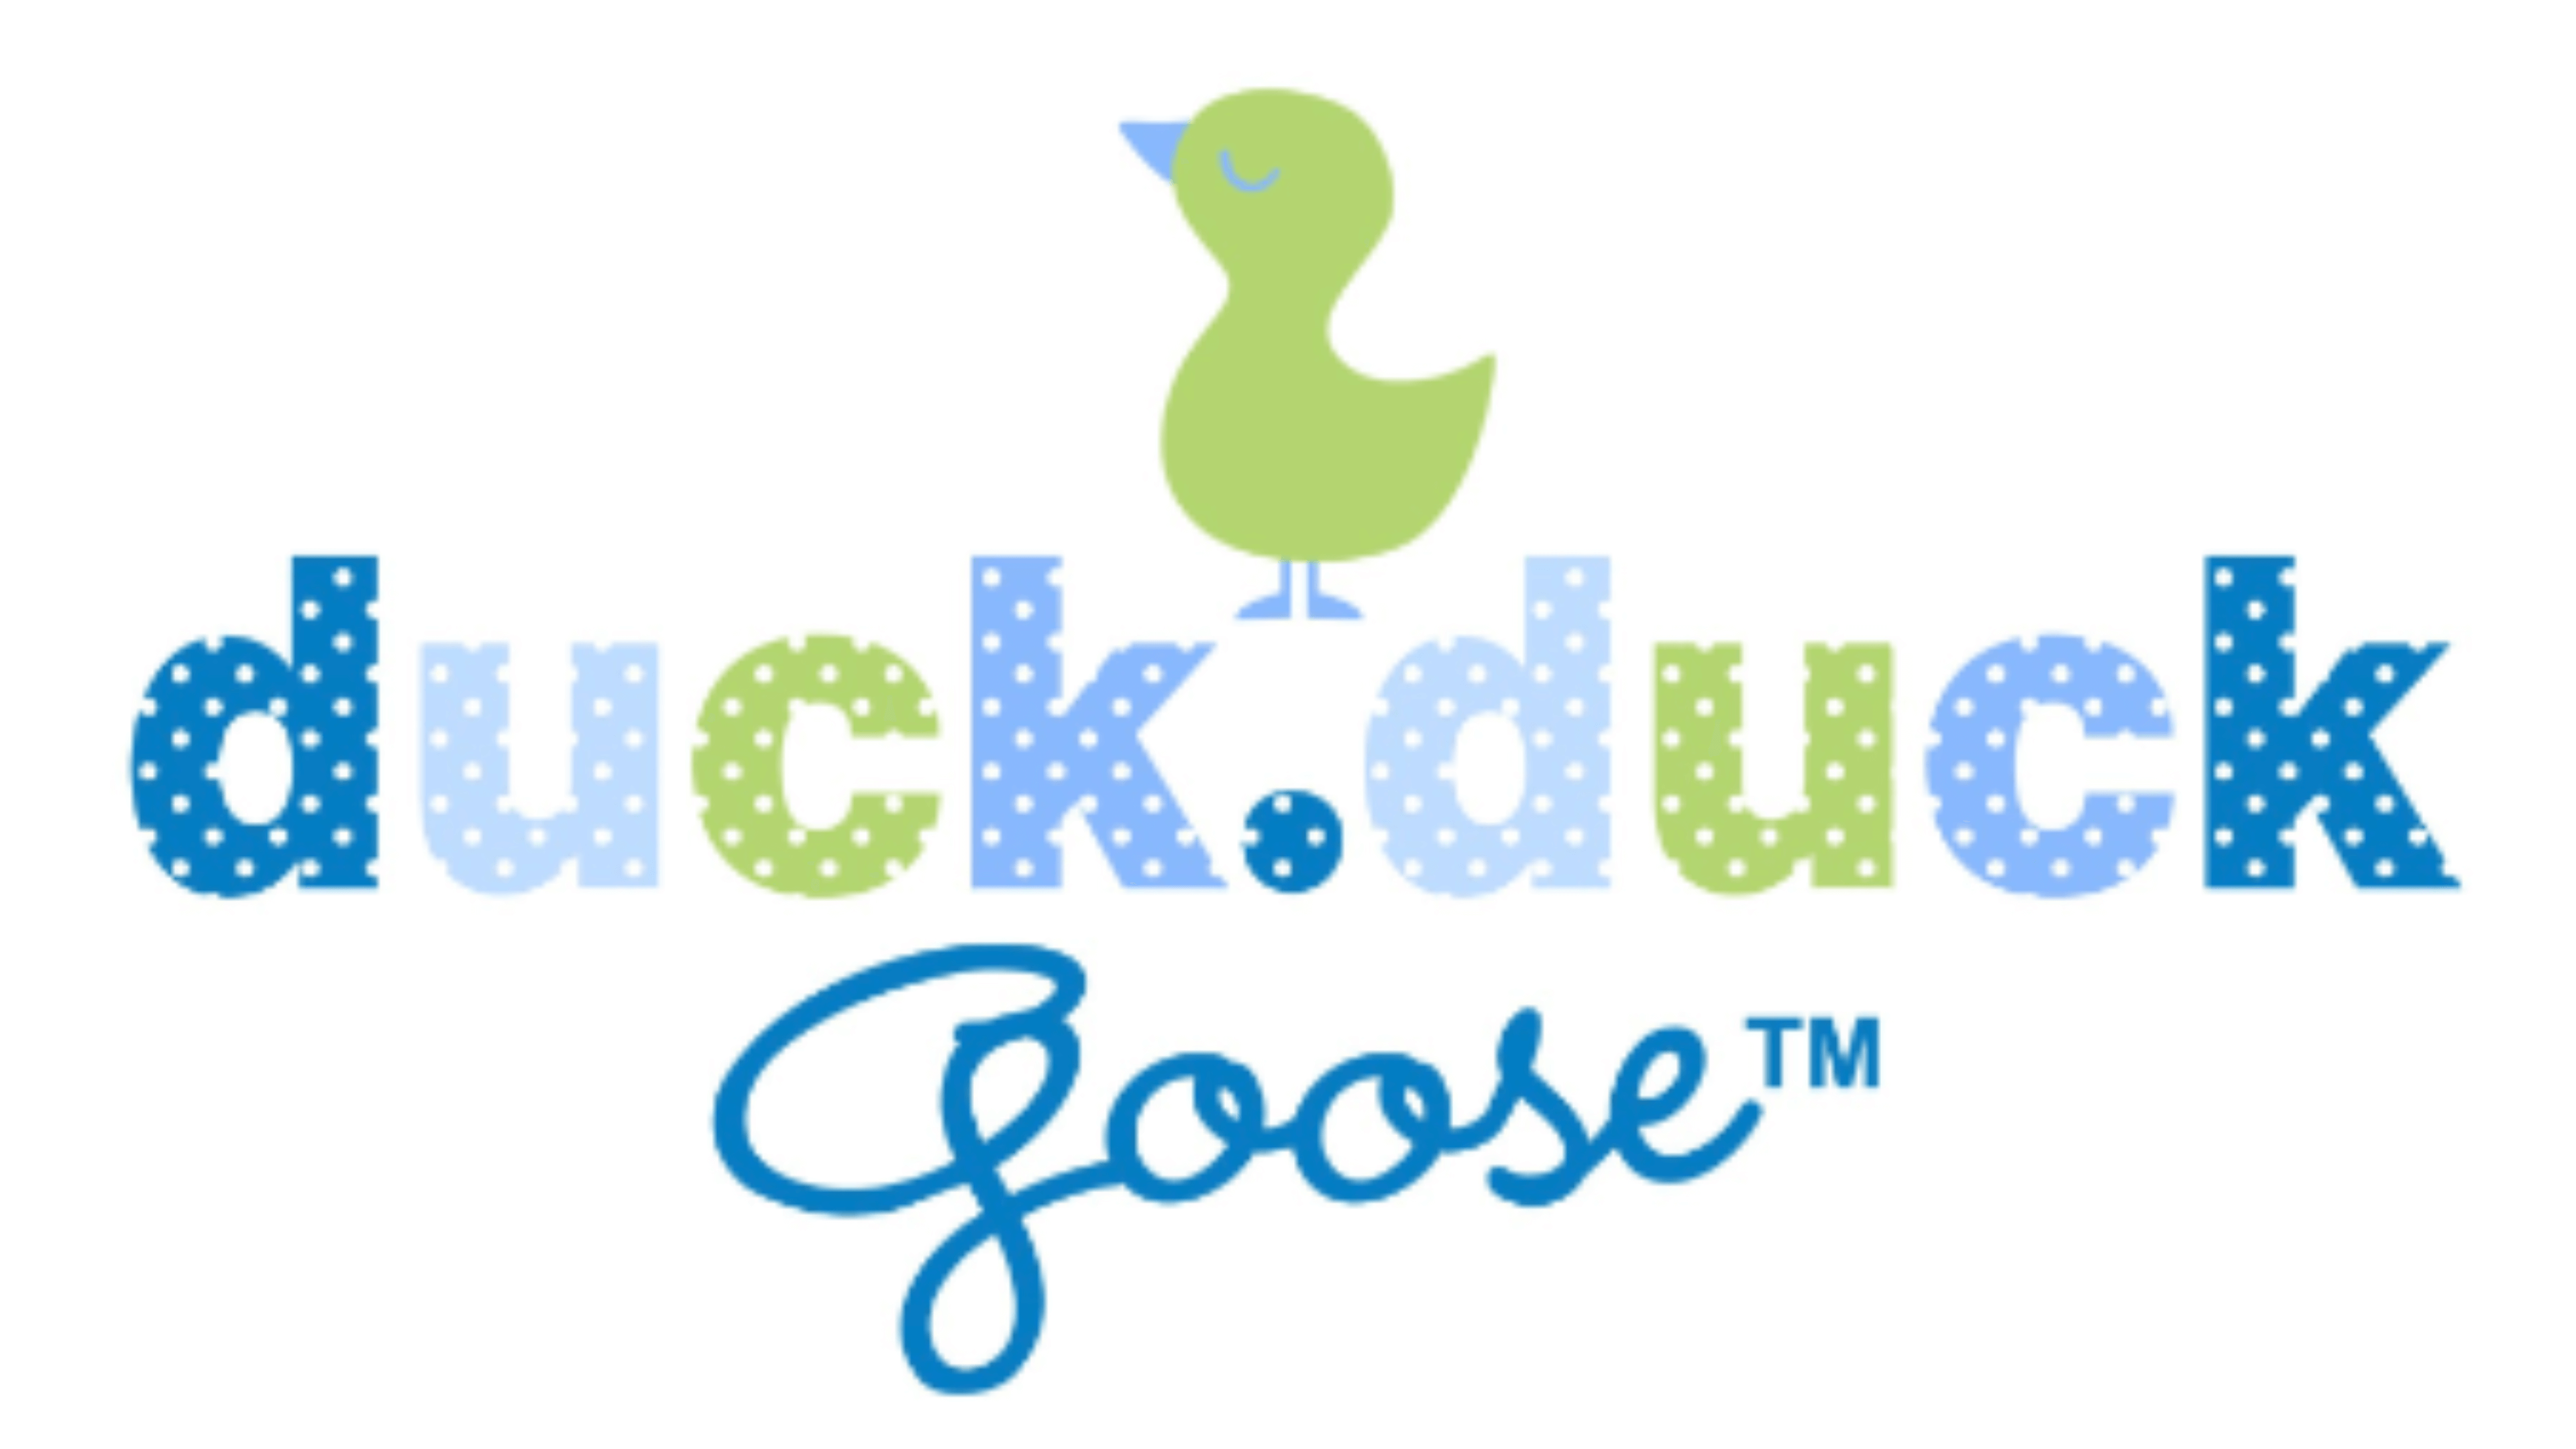 Duck Duck Goose logo